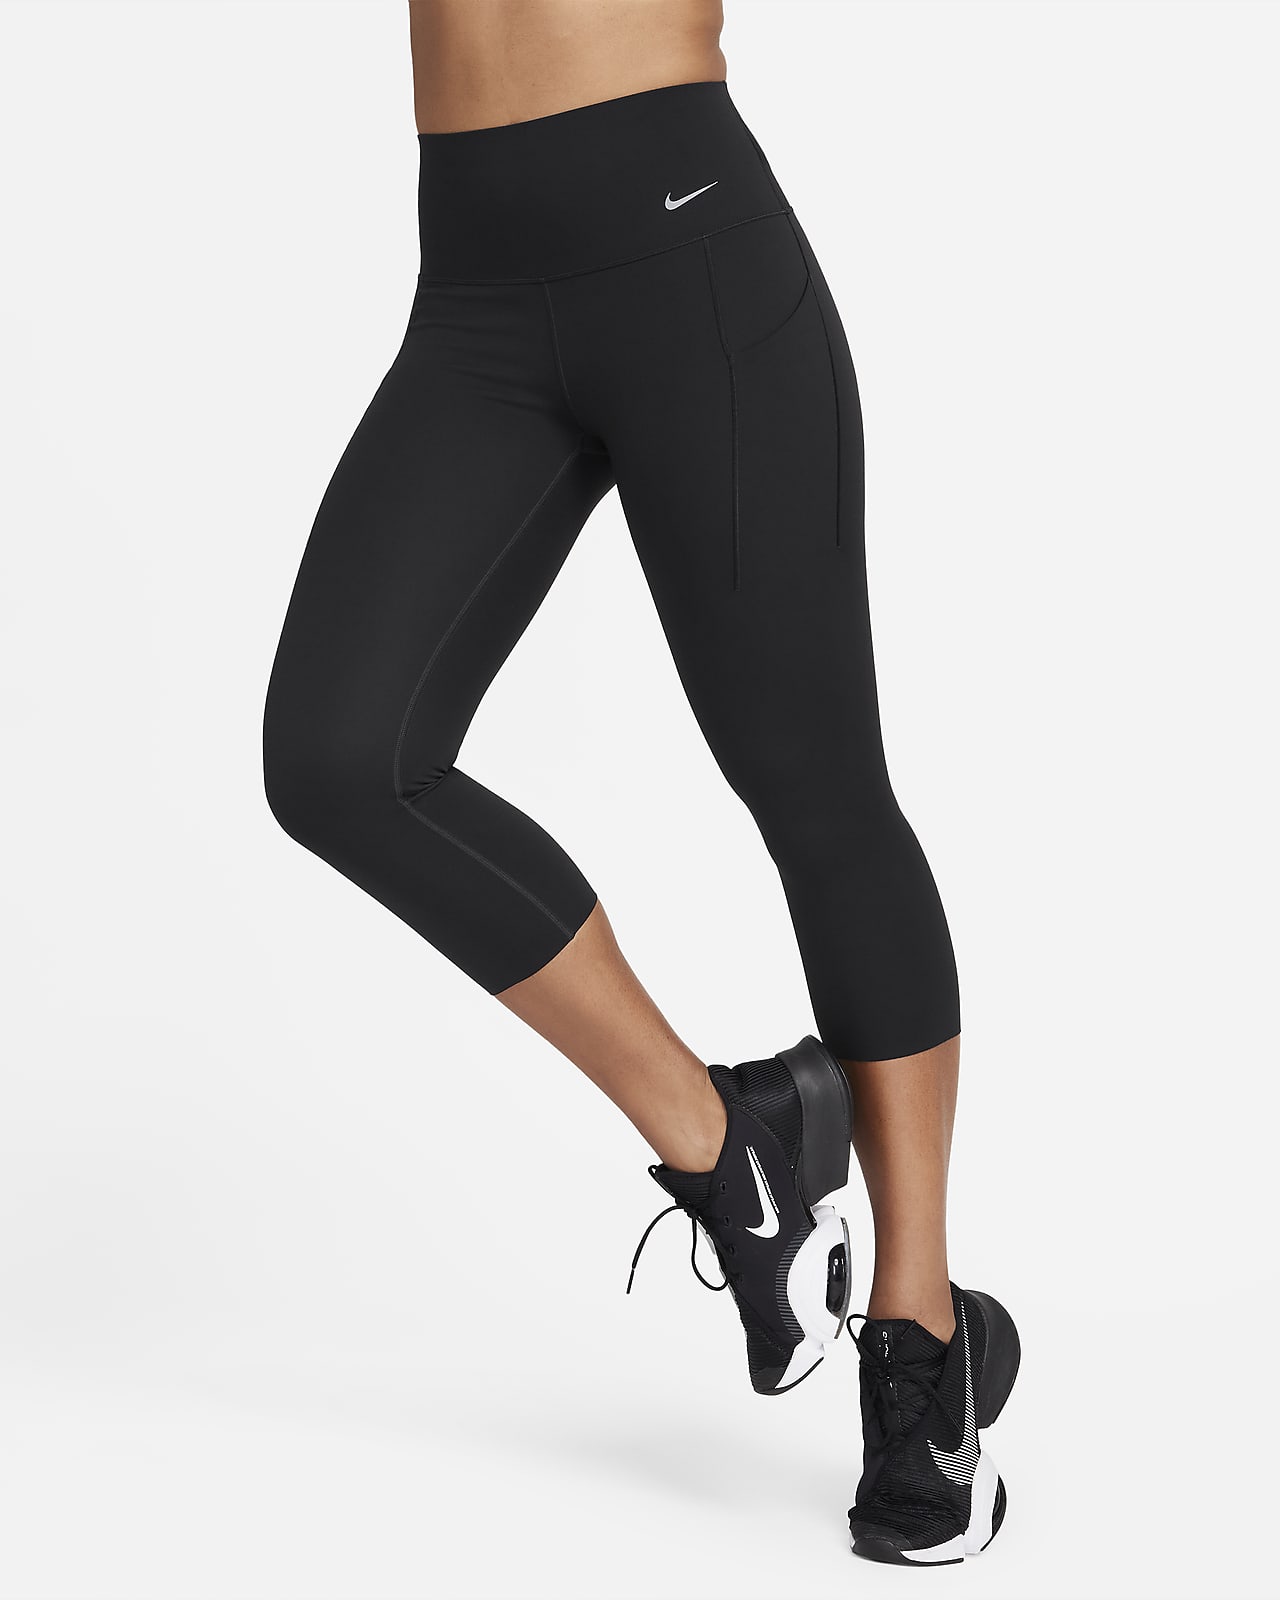 Women's High-Waisted Leggings. Nike CA